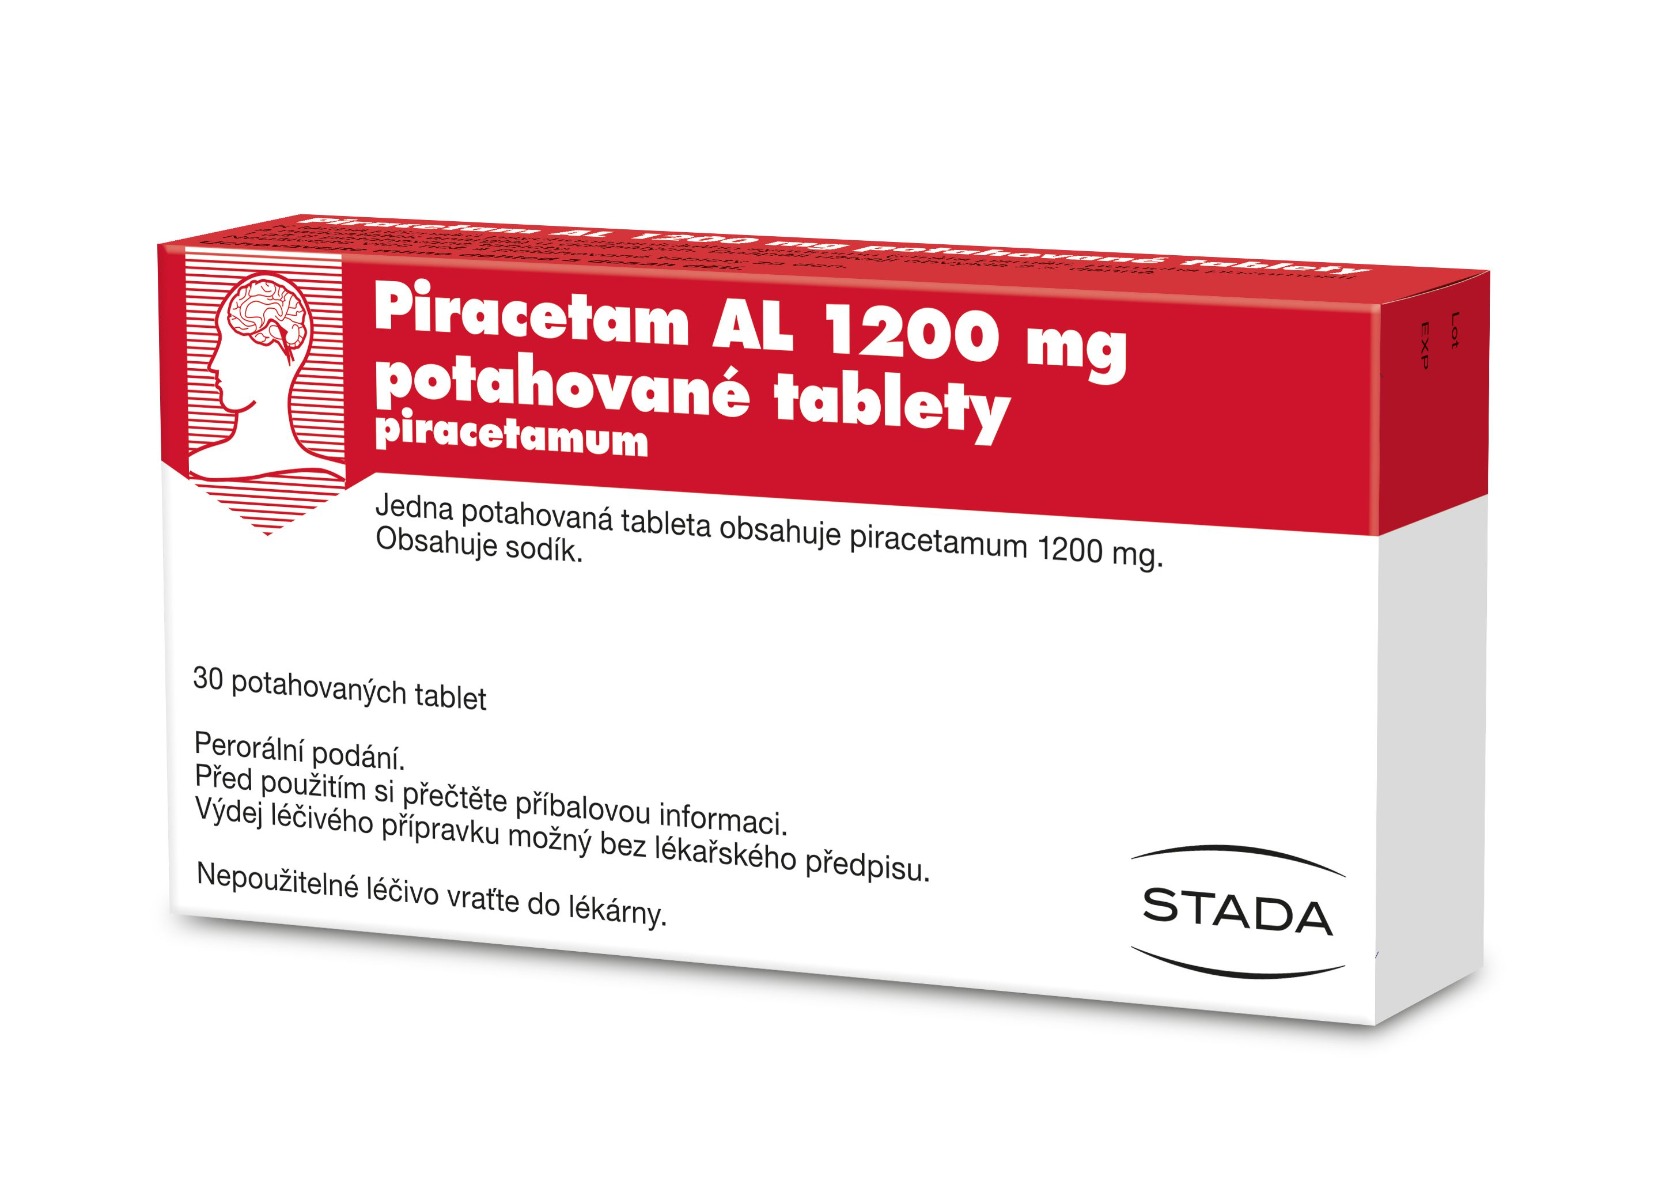 Piracetam AL 1200 mg 30 potahovaných tablet Piracetam